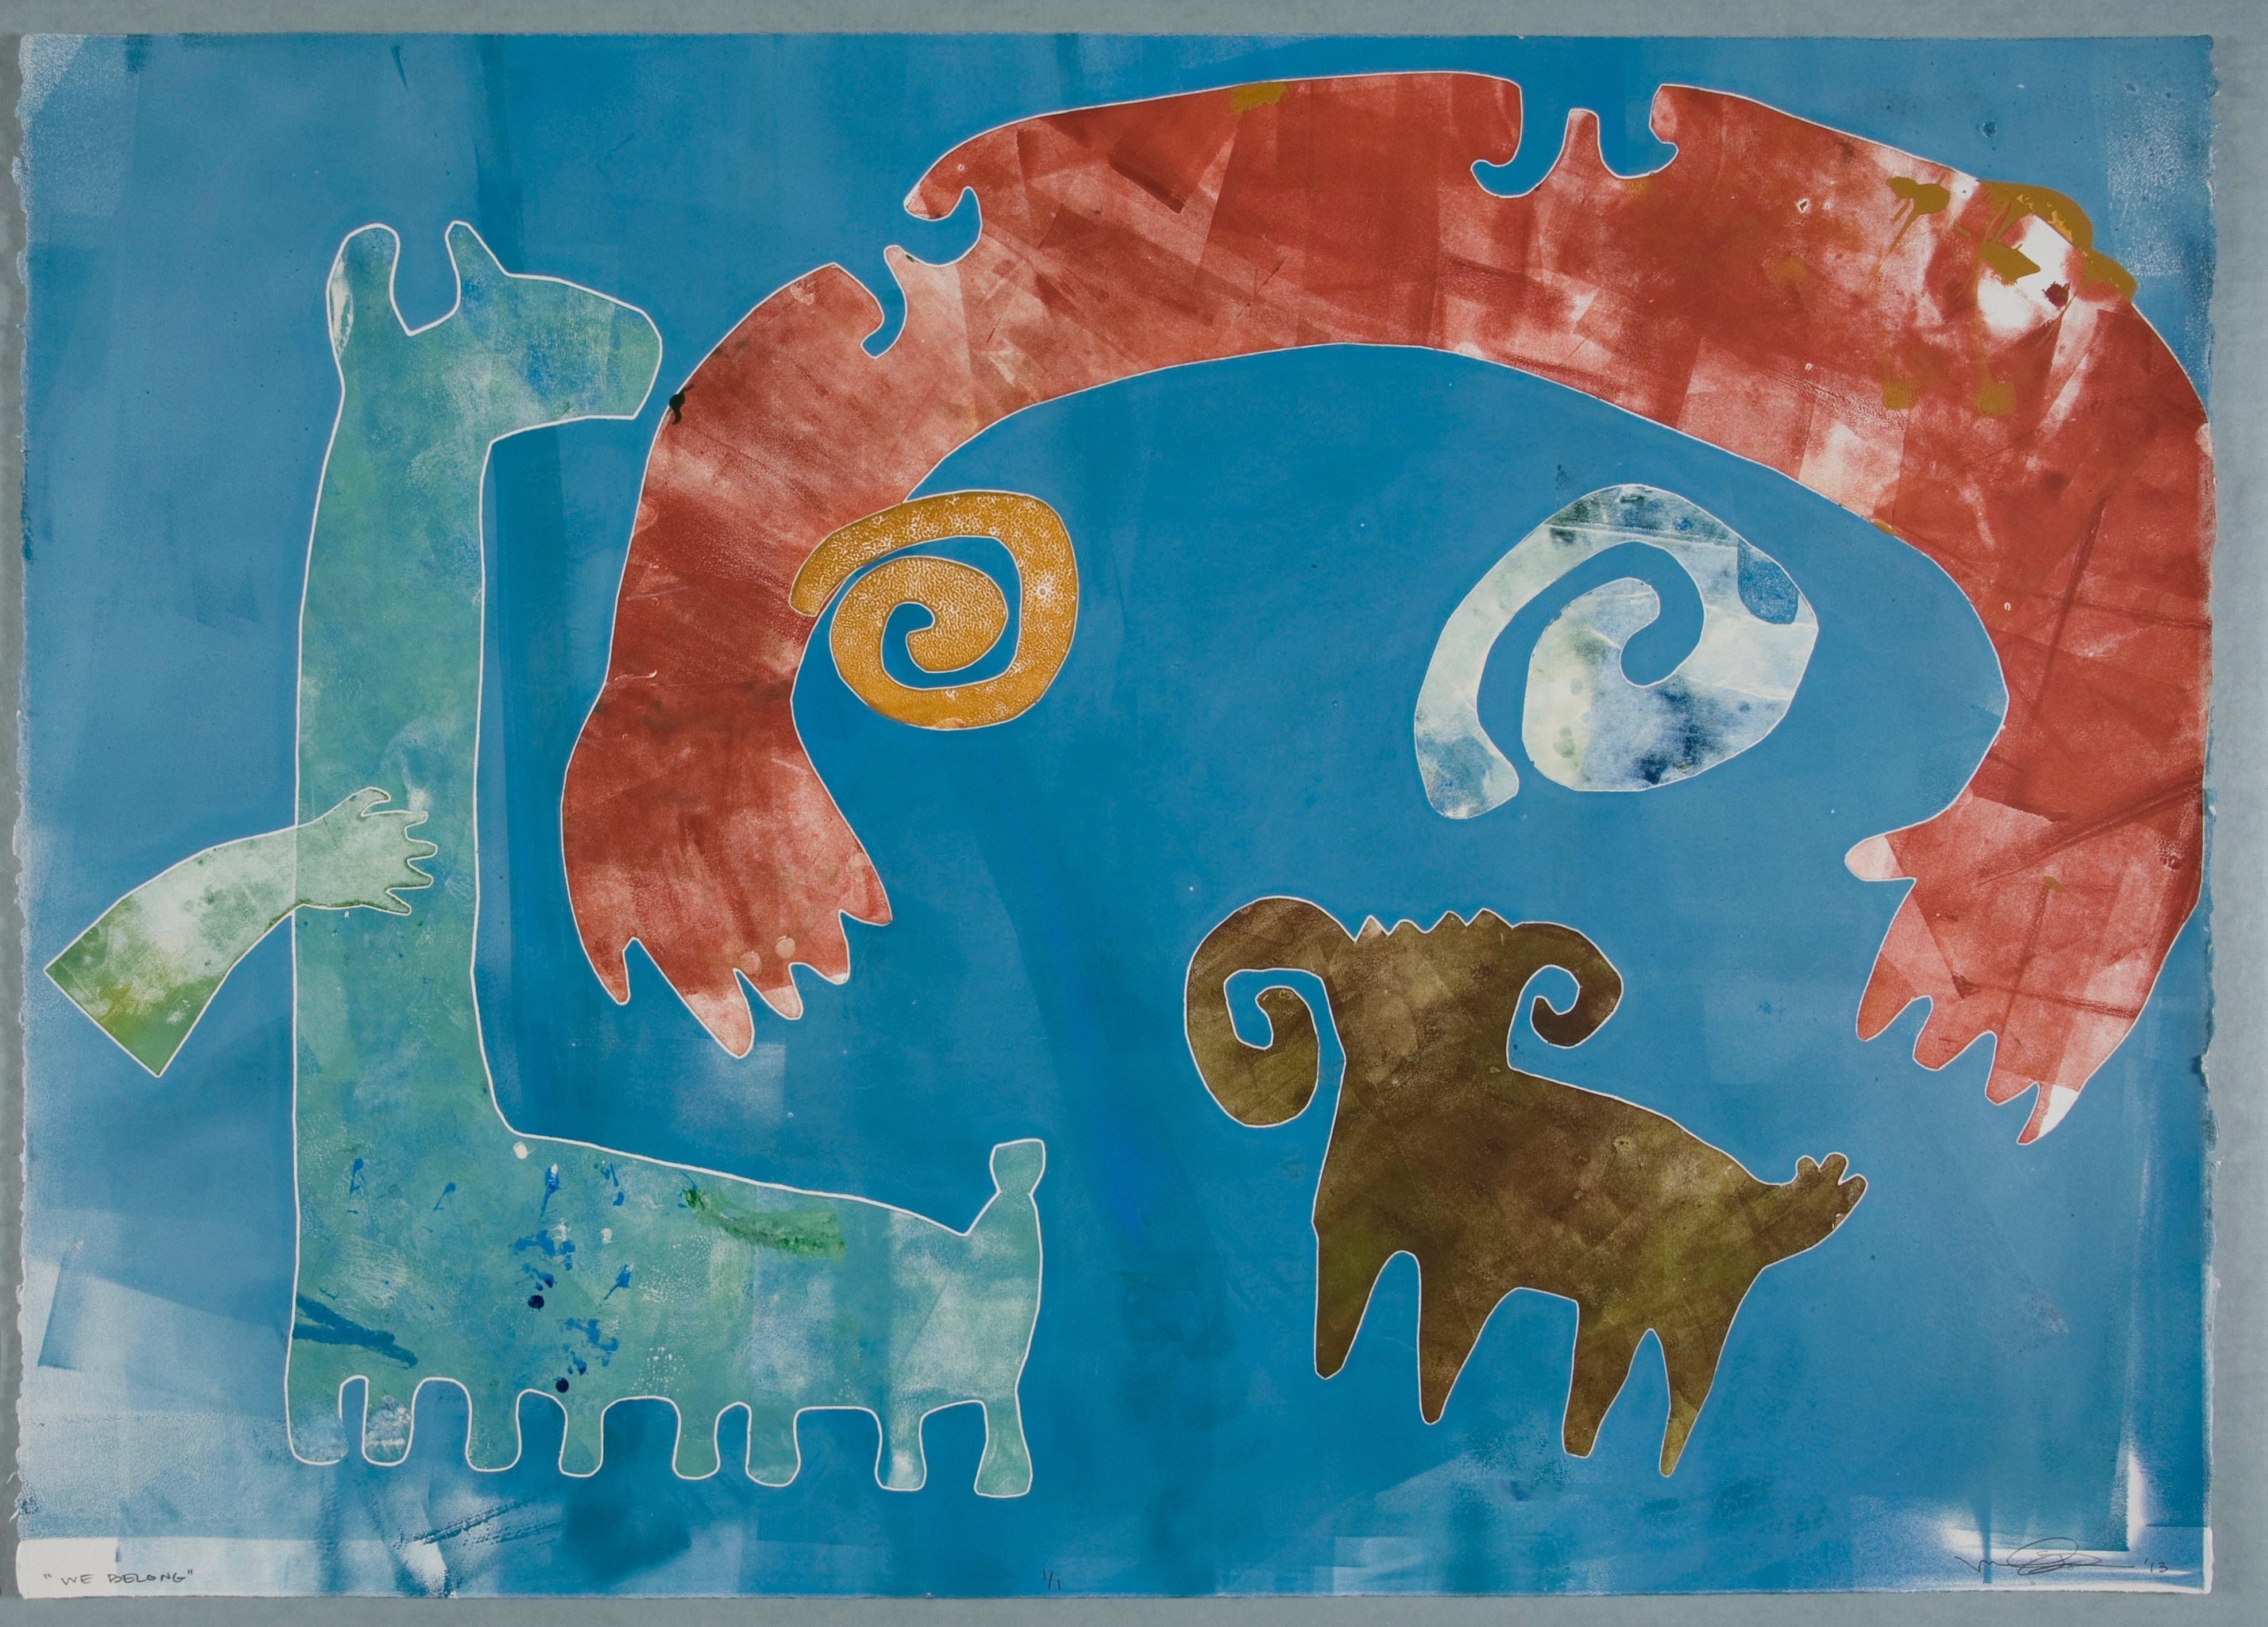 We Belong by Melanie Yazzie, unique monotype, blue, red, ram, dog, spiral, Navajo